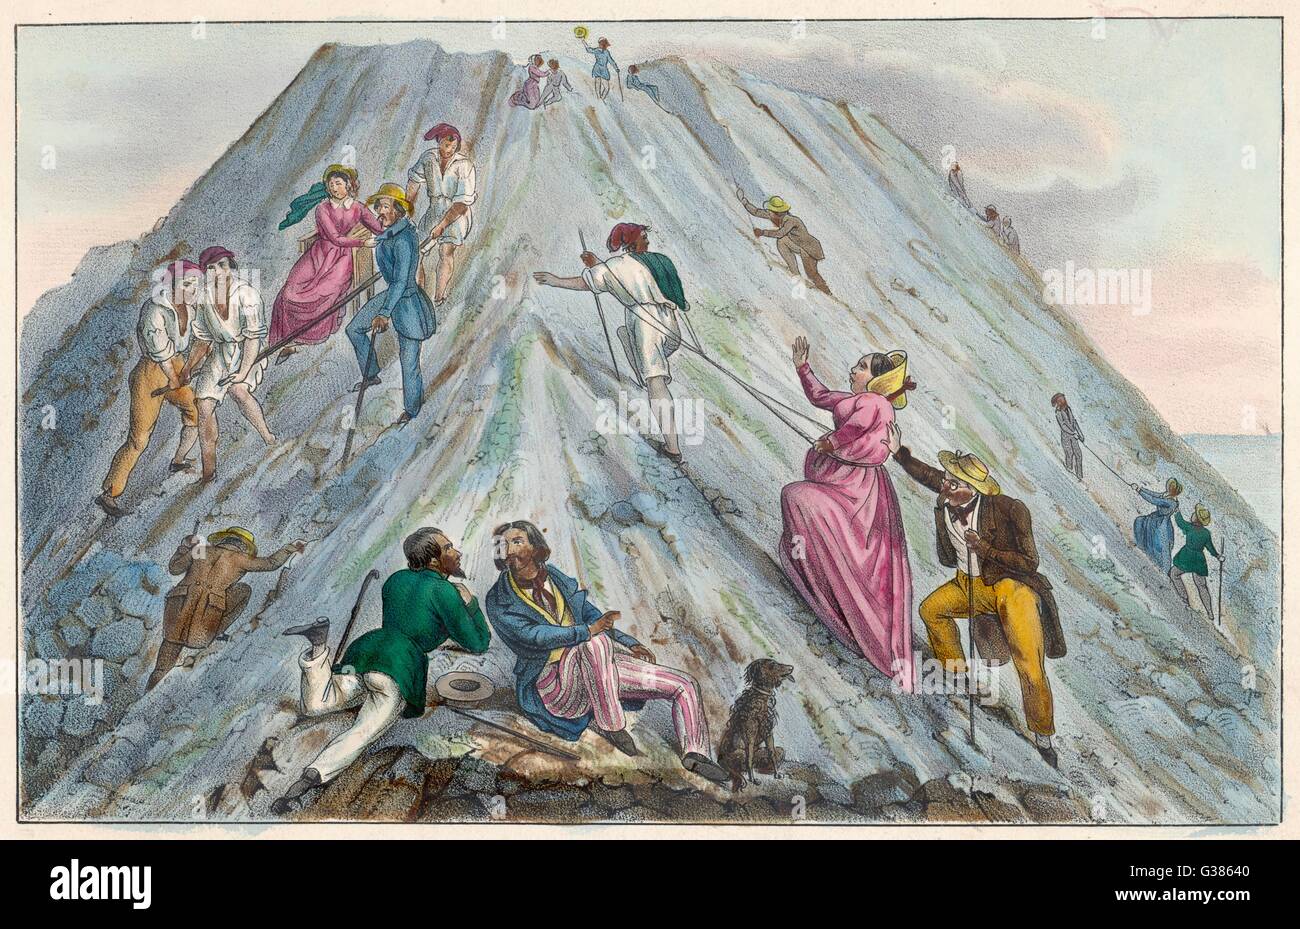 Les touristes vers le haut le côté de la montagne Date : vers 1840 Banque D'Images